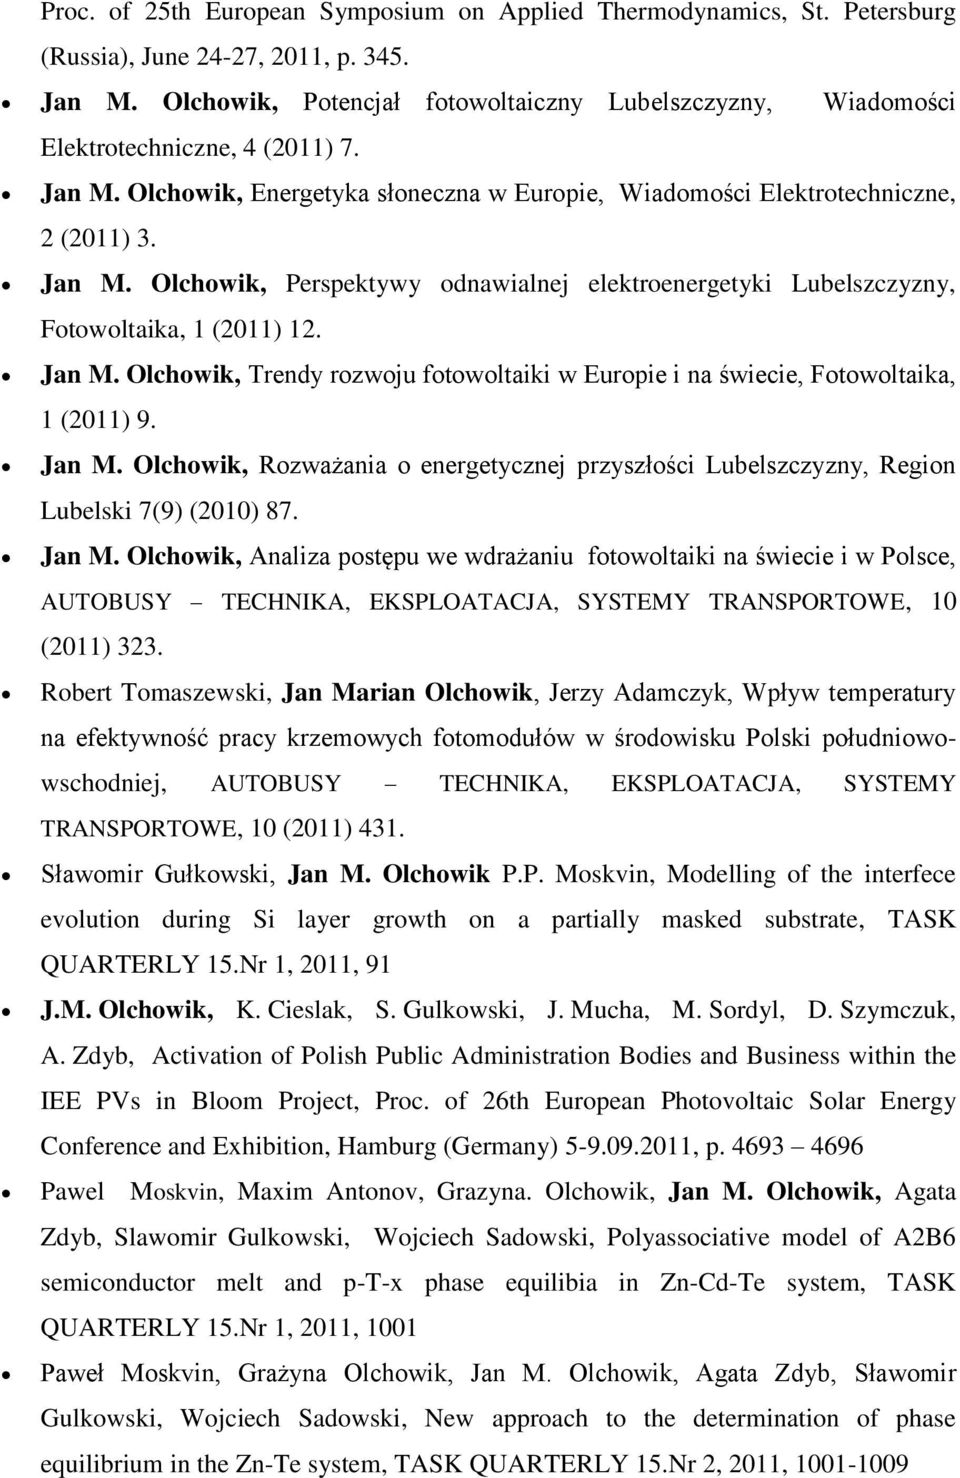 Jan M. Olchowik, Trendy rozwoju fotowoltaiki w Europie i na świecie, Fotowoltaika, 1 (2011) 9. Jan M. Olchowik, Rozważania o energetycznej przyszłości Lubelszczyzny, Region Lubelski 7(9) (2010) 87.